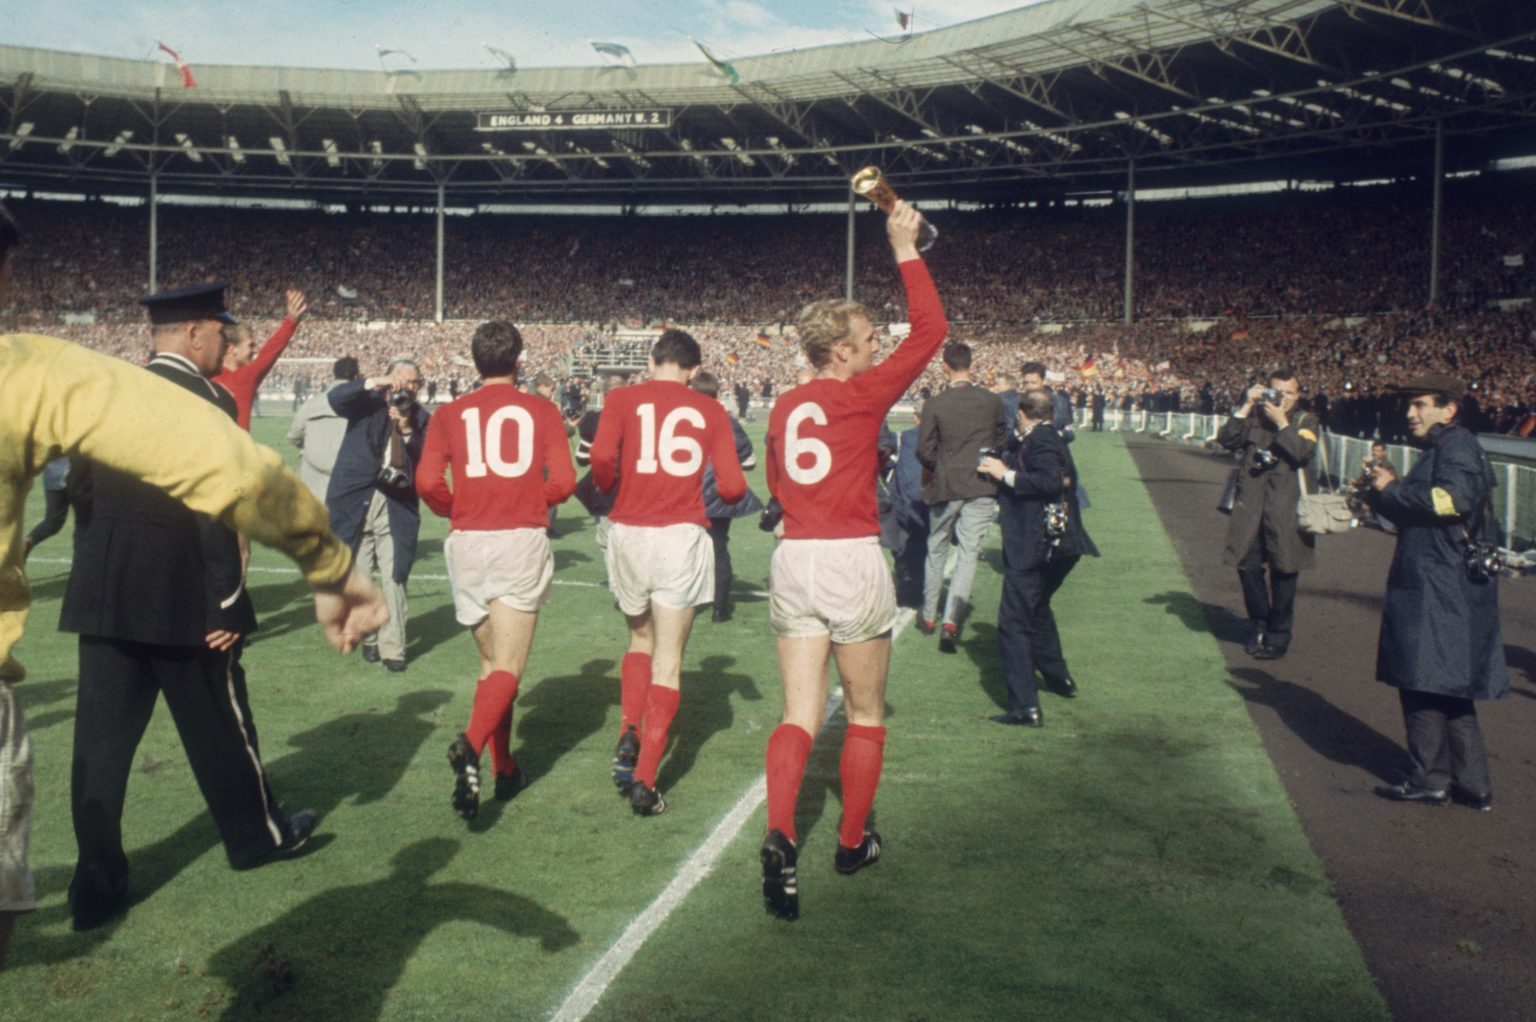 Số 6 là ám ảnh vinh quang của bóng đá Anh khi họ VĐTG năm 1966 với đội trưởng Moore đeo số 6